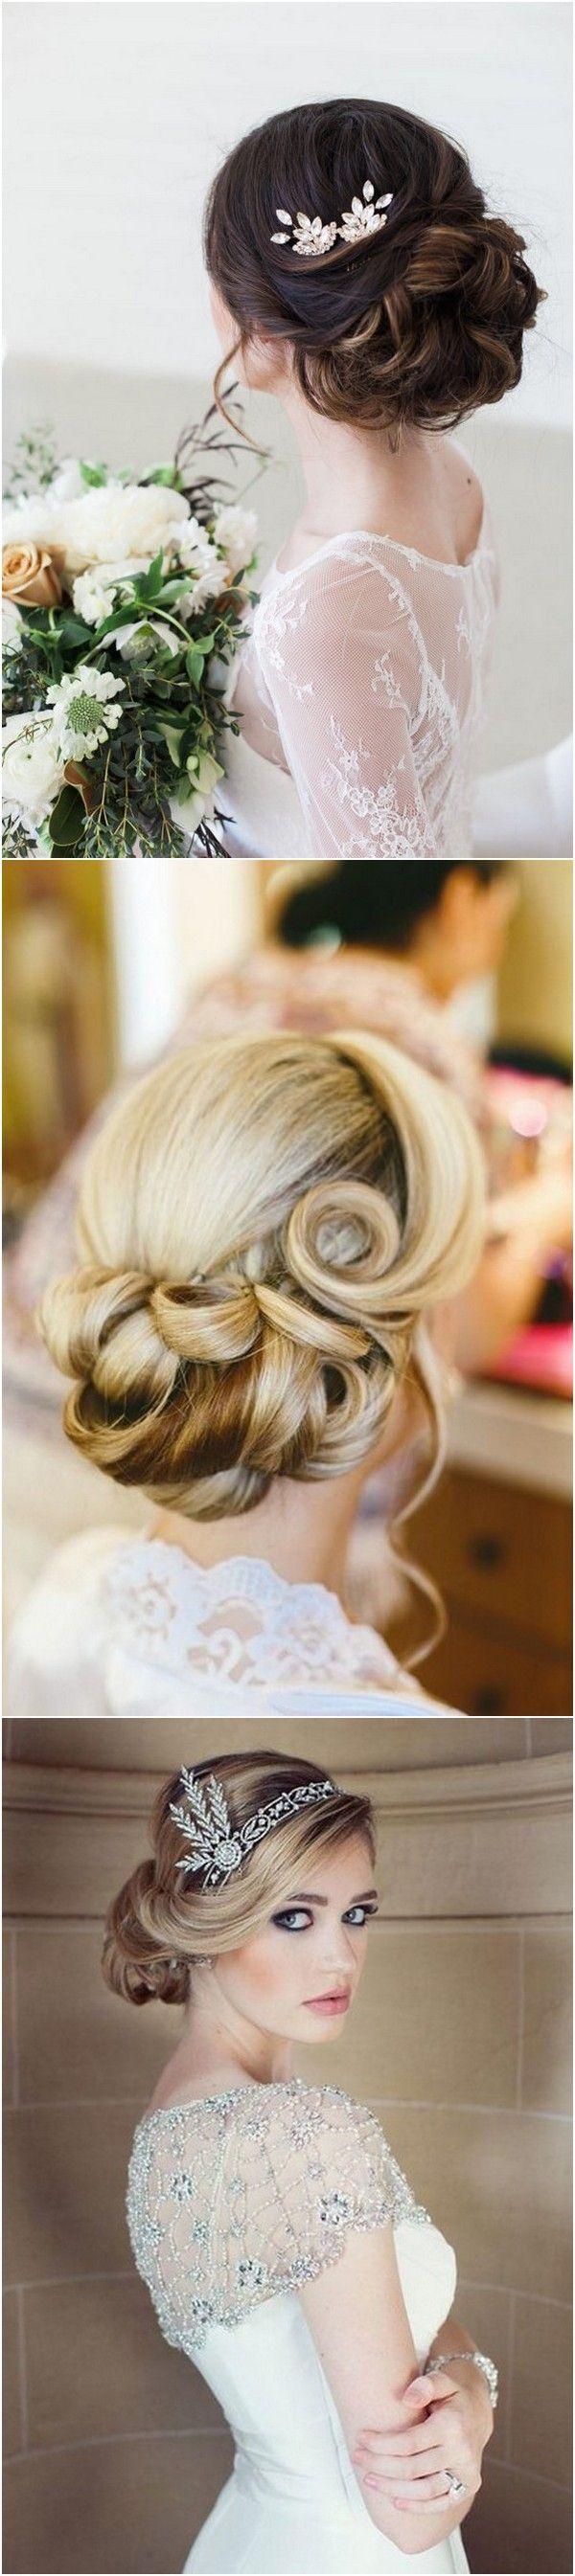 Hochzeit - Top 20 Vintage Wedding Hairstyles For Brides